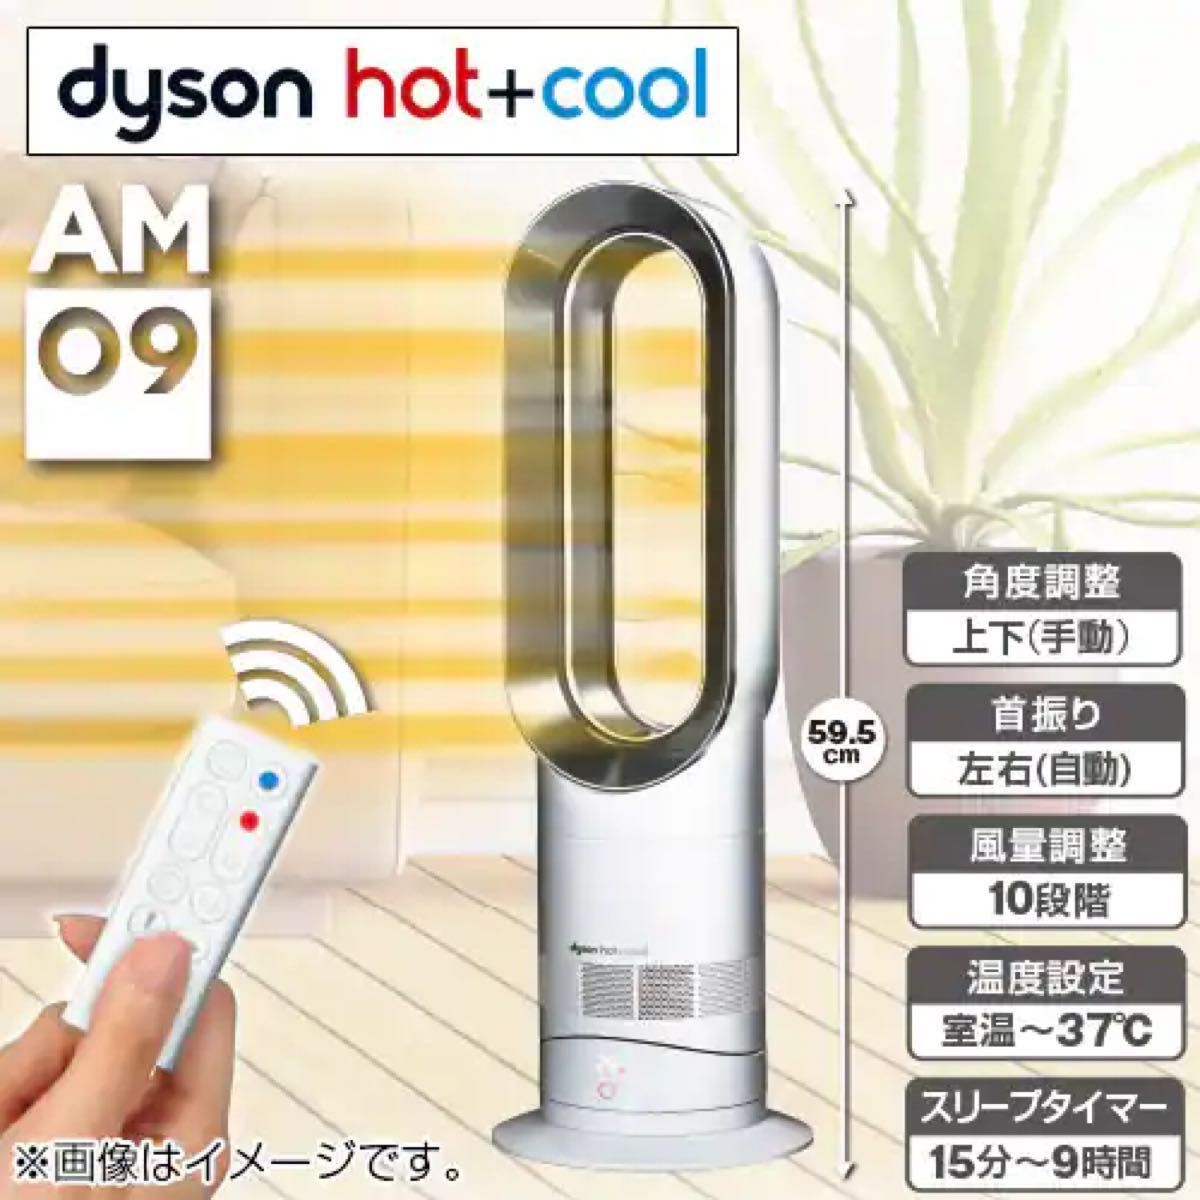 dyson ダイソン hot&cool Hot＋Cool AM エアマルチプライヤー 扇風機